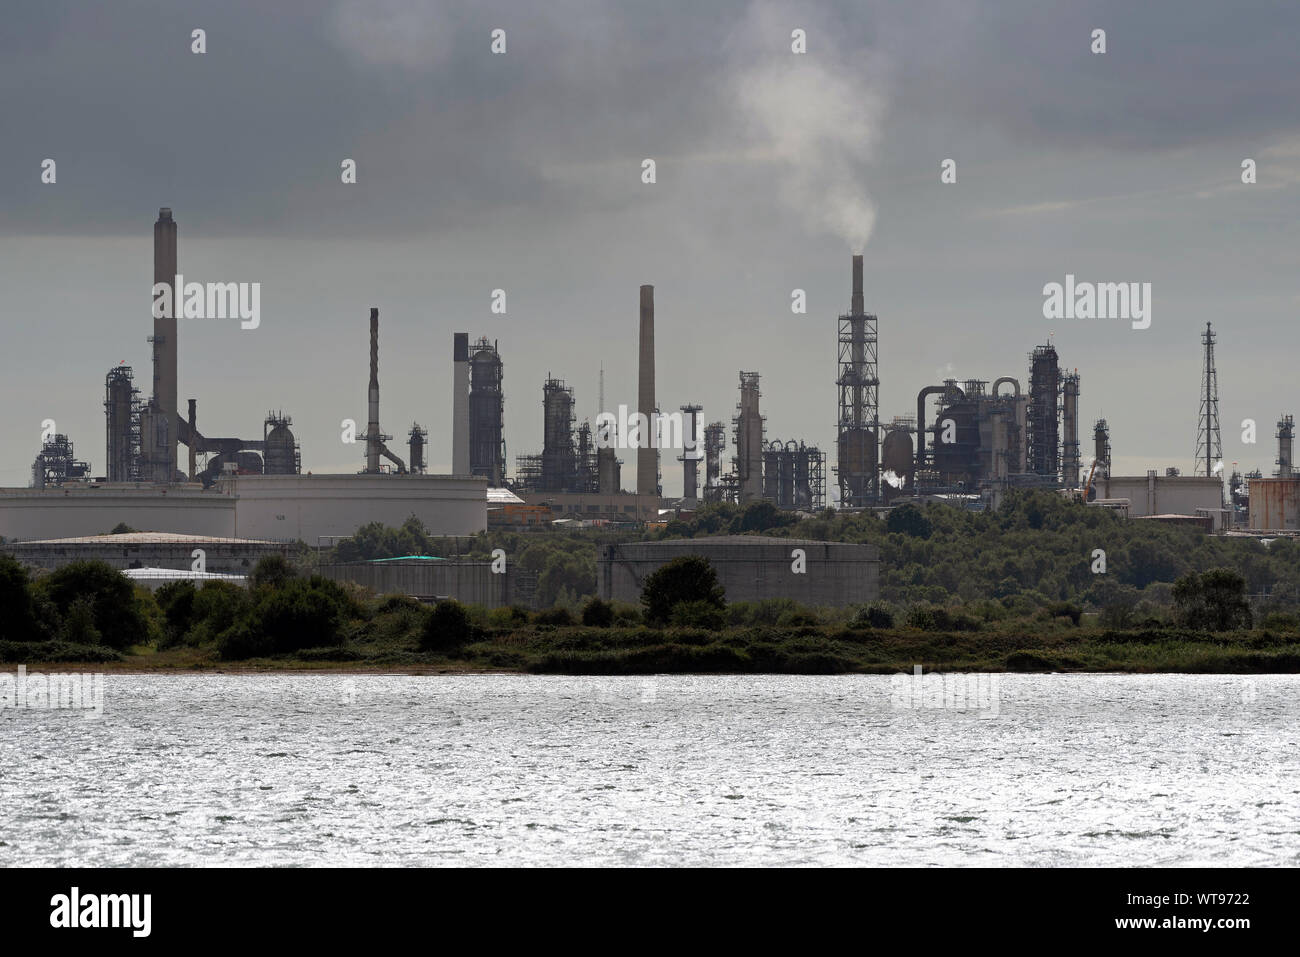 Fawley, Southampton, England, UK, September 2019. Gegen das Licht Bild von Fawley Raffinerie auf Southampton, Großbritannien Stockfoto